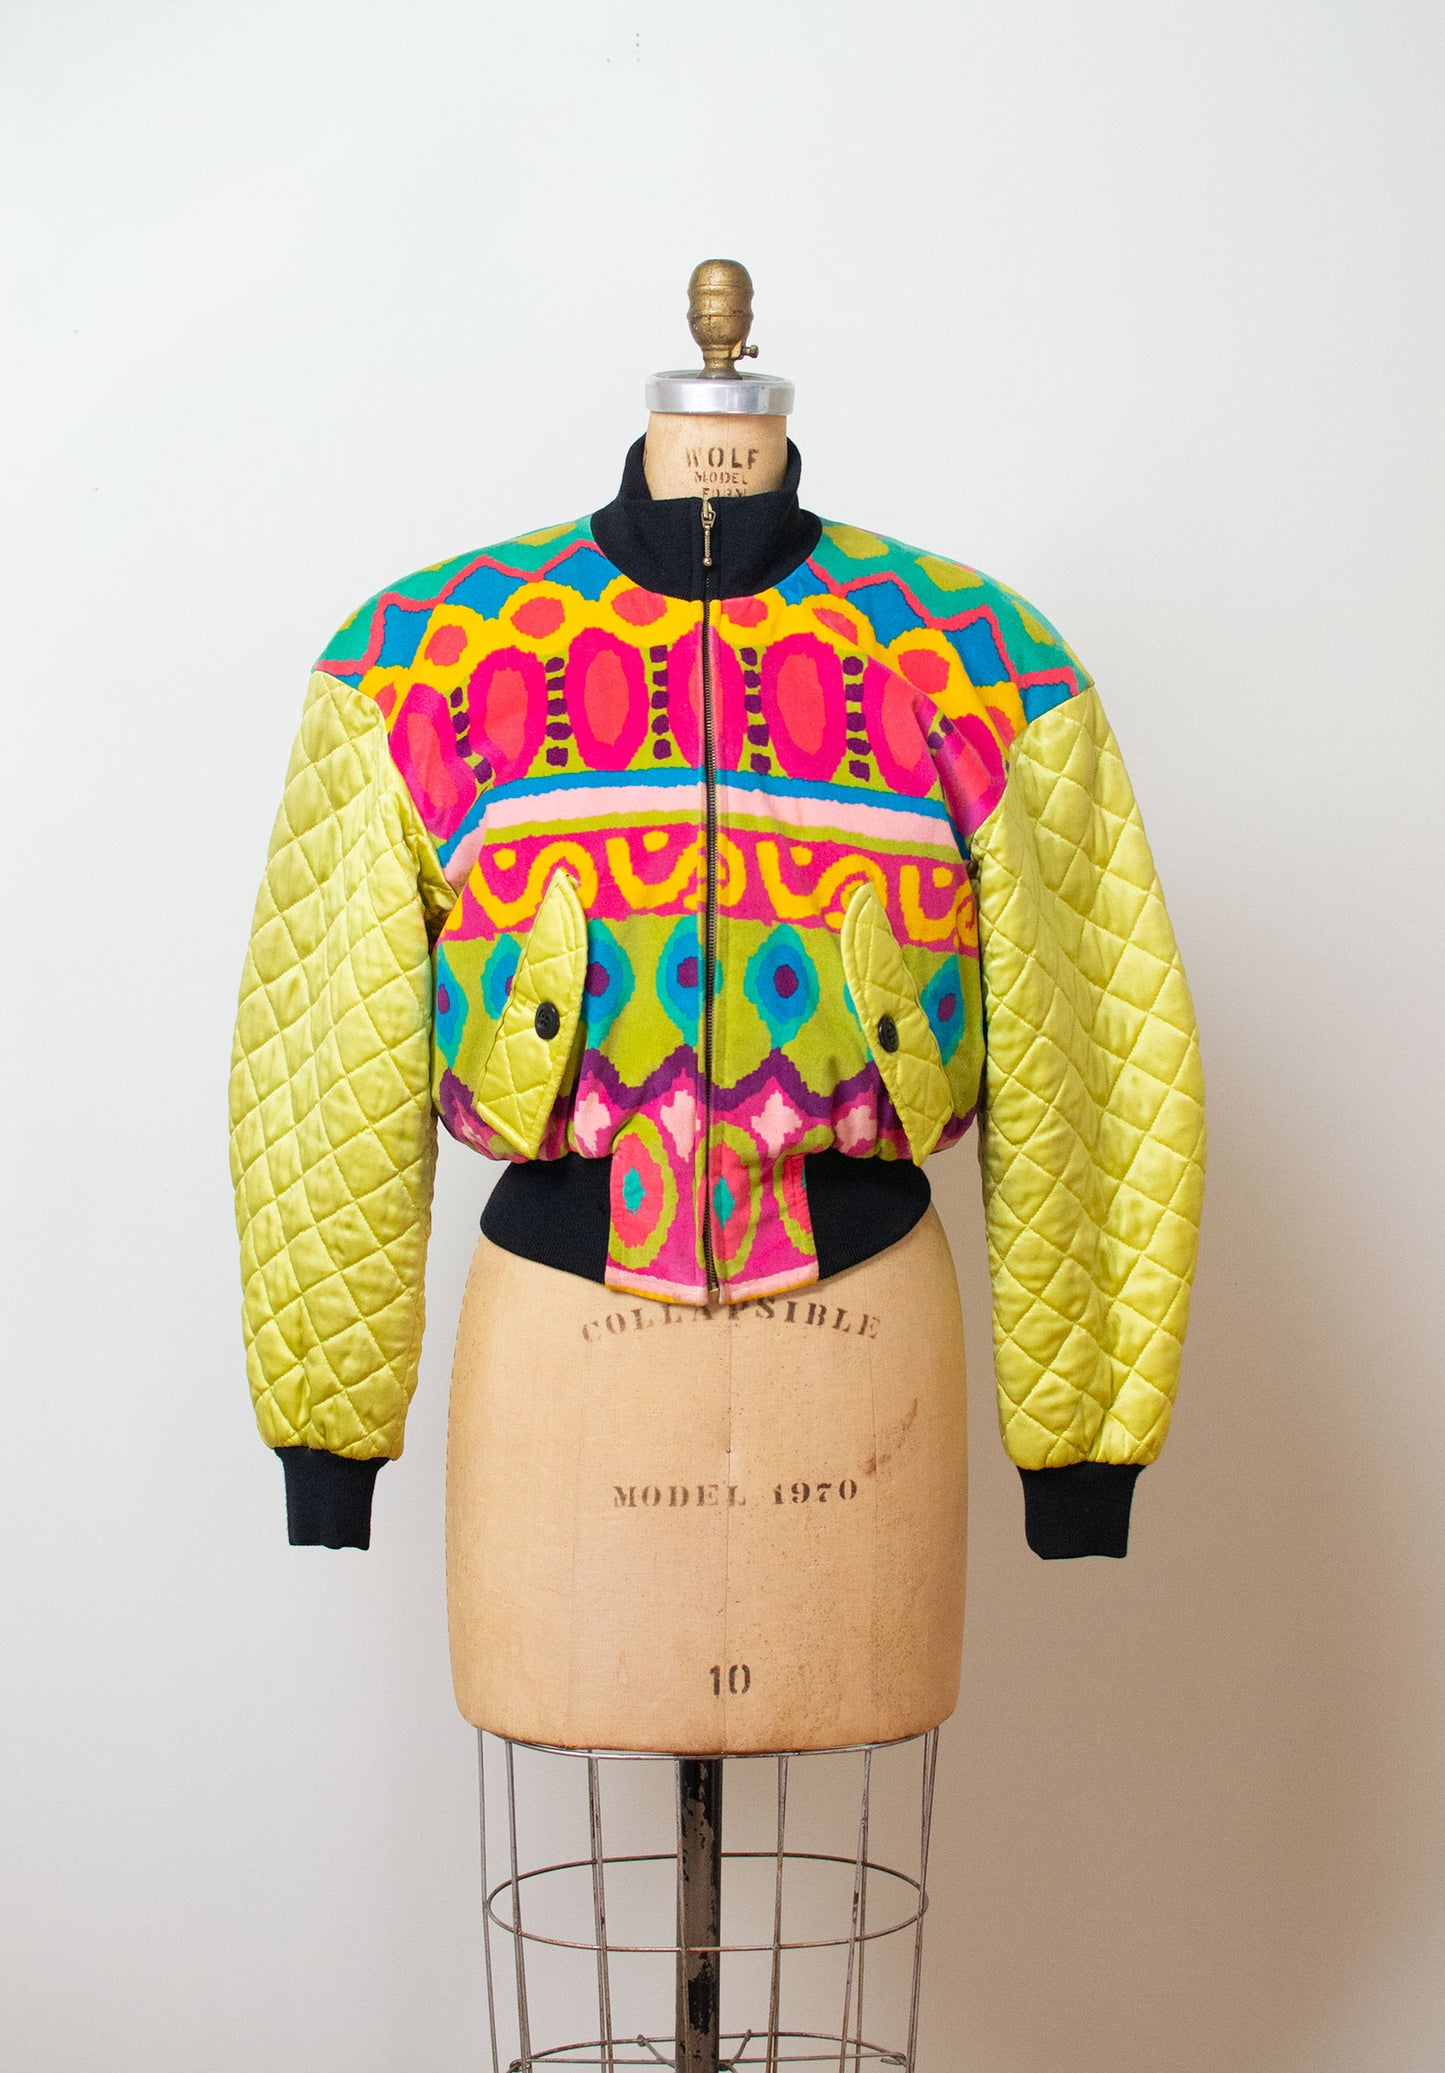 SALE 1990s Silk Jacket | Escada By Margaretha Ley